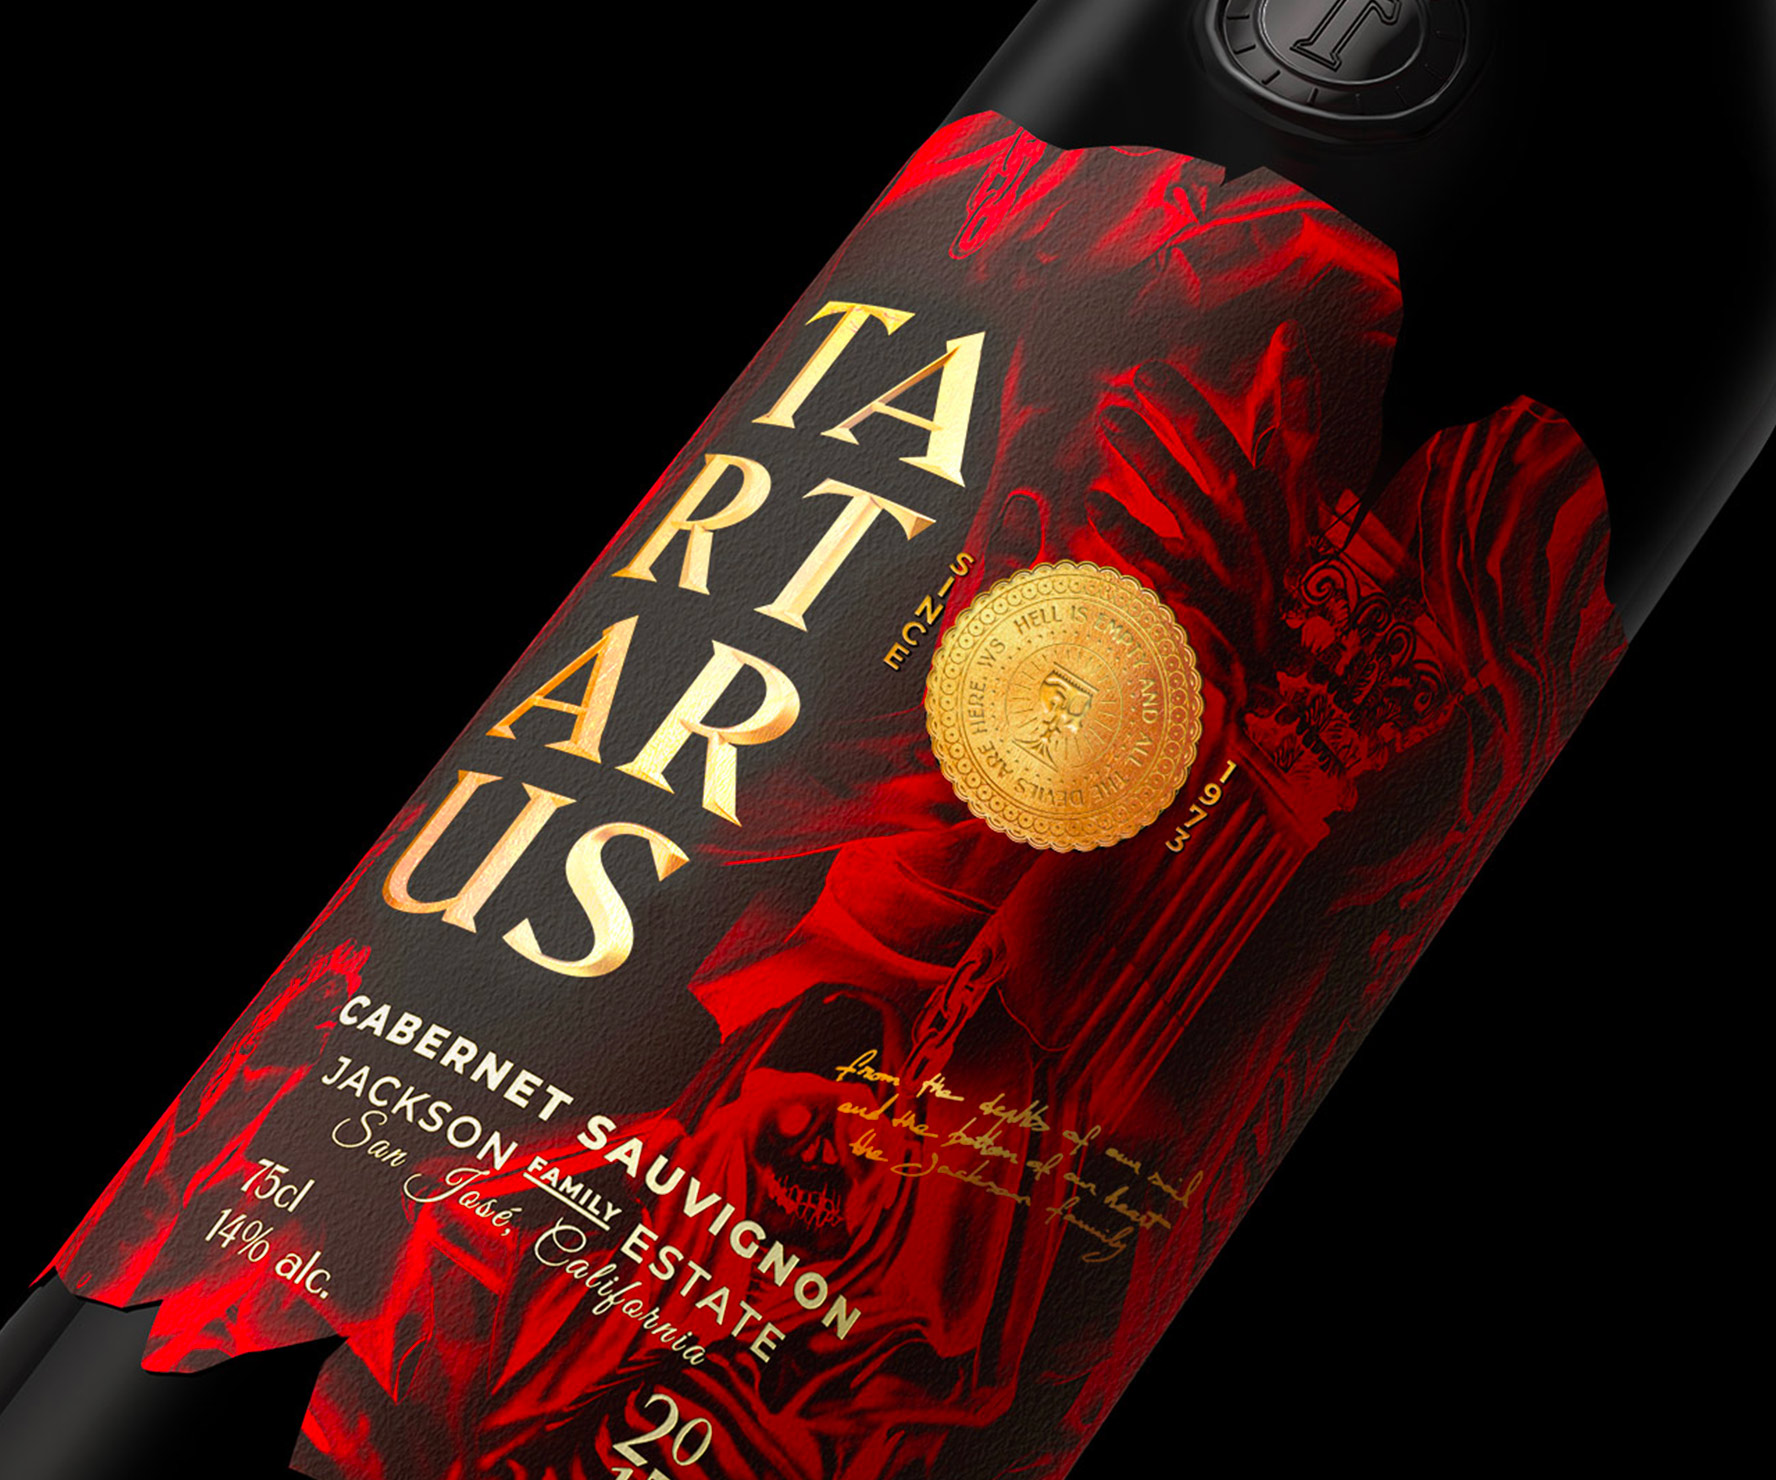 Studio Boam Creates Tartarus Wine Label Design